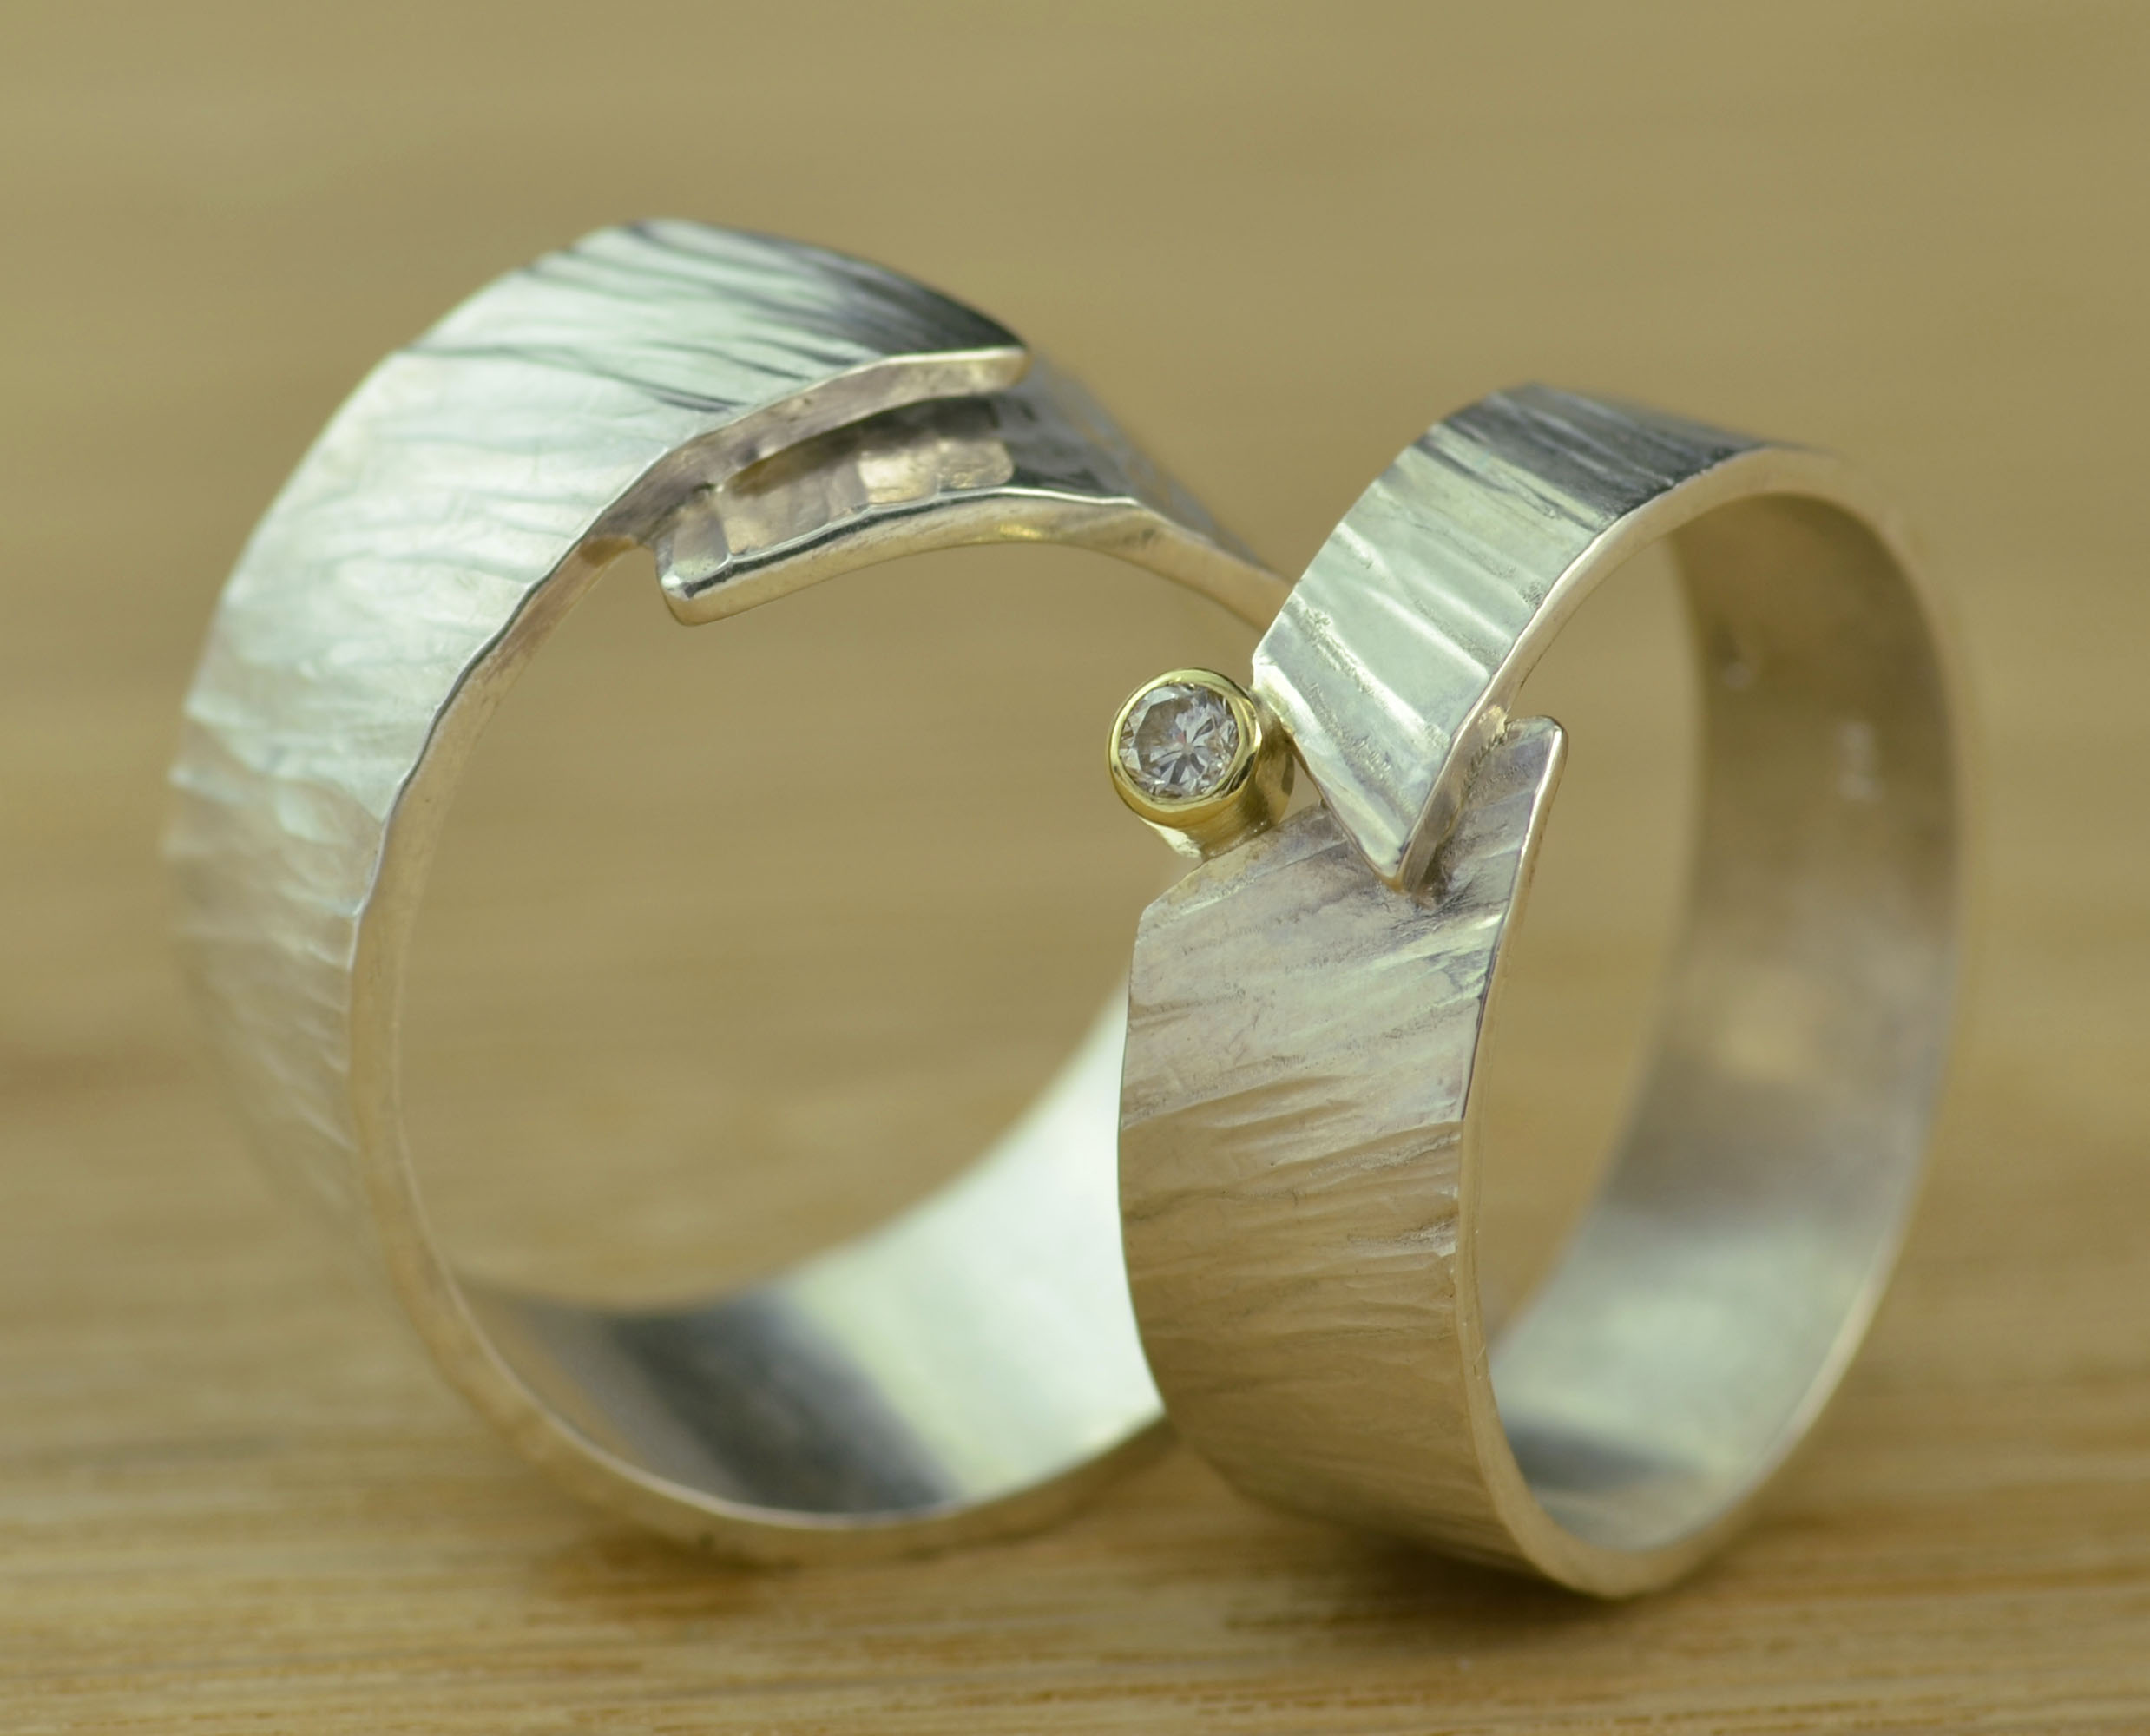 avond gordijn brandstof Ring Timber Diamant: gehamerd zilver met een diamantje